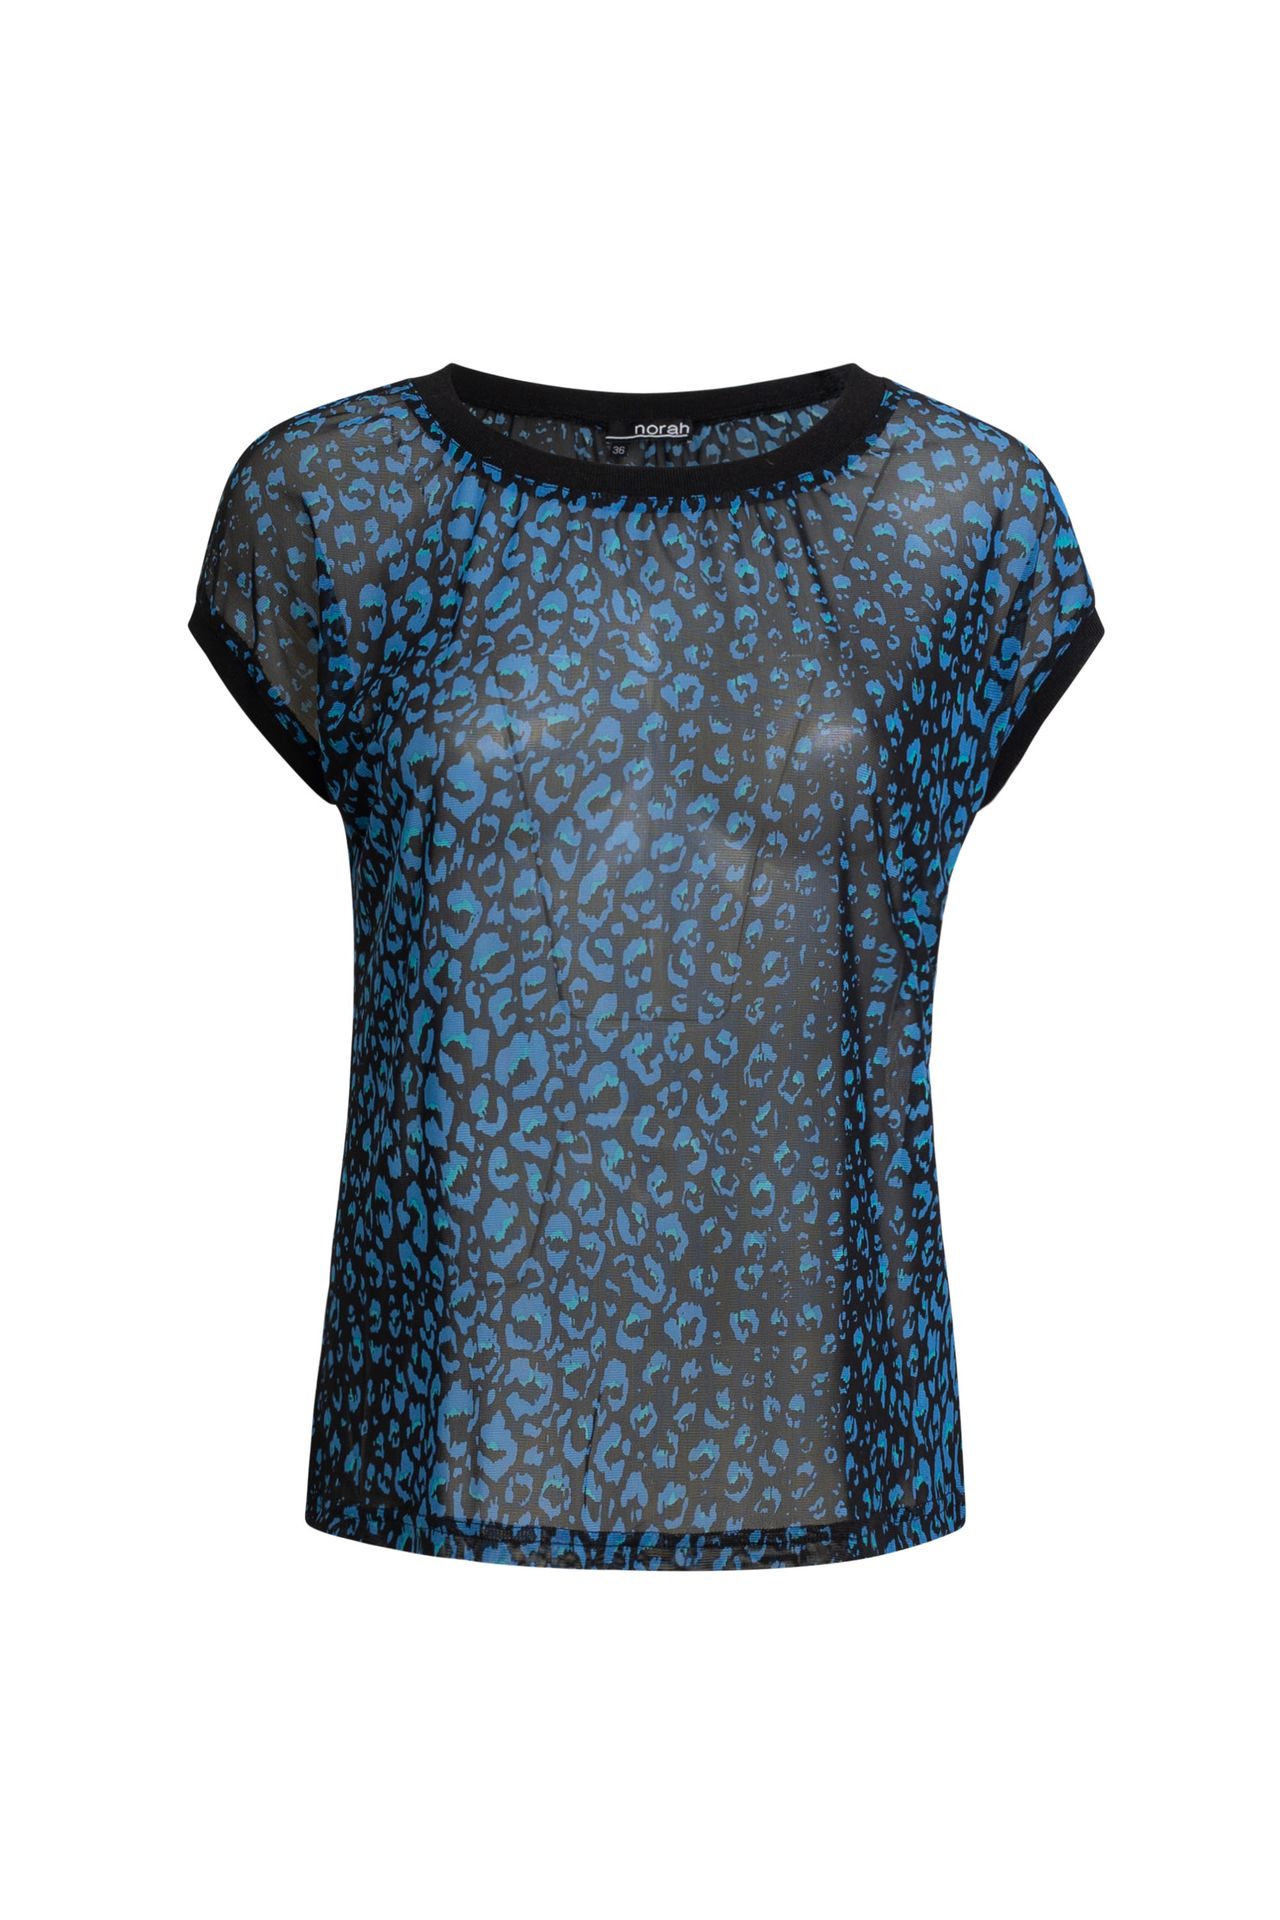 Norah Shirt cobalt multicolor 211507-469